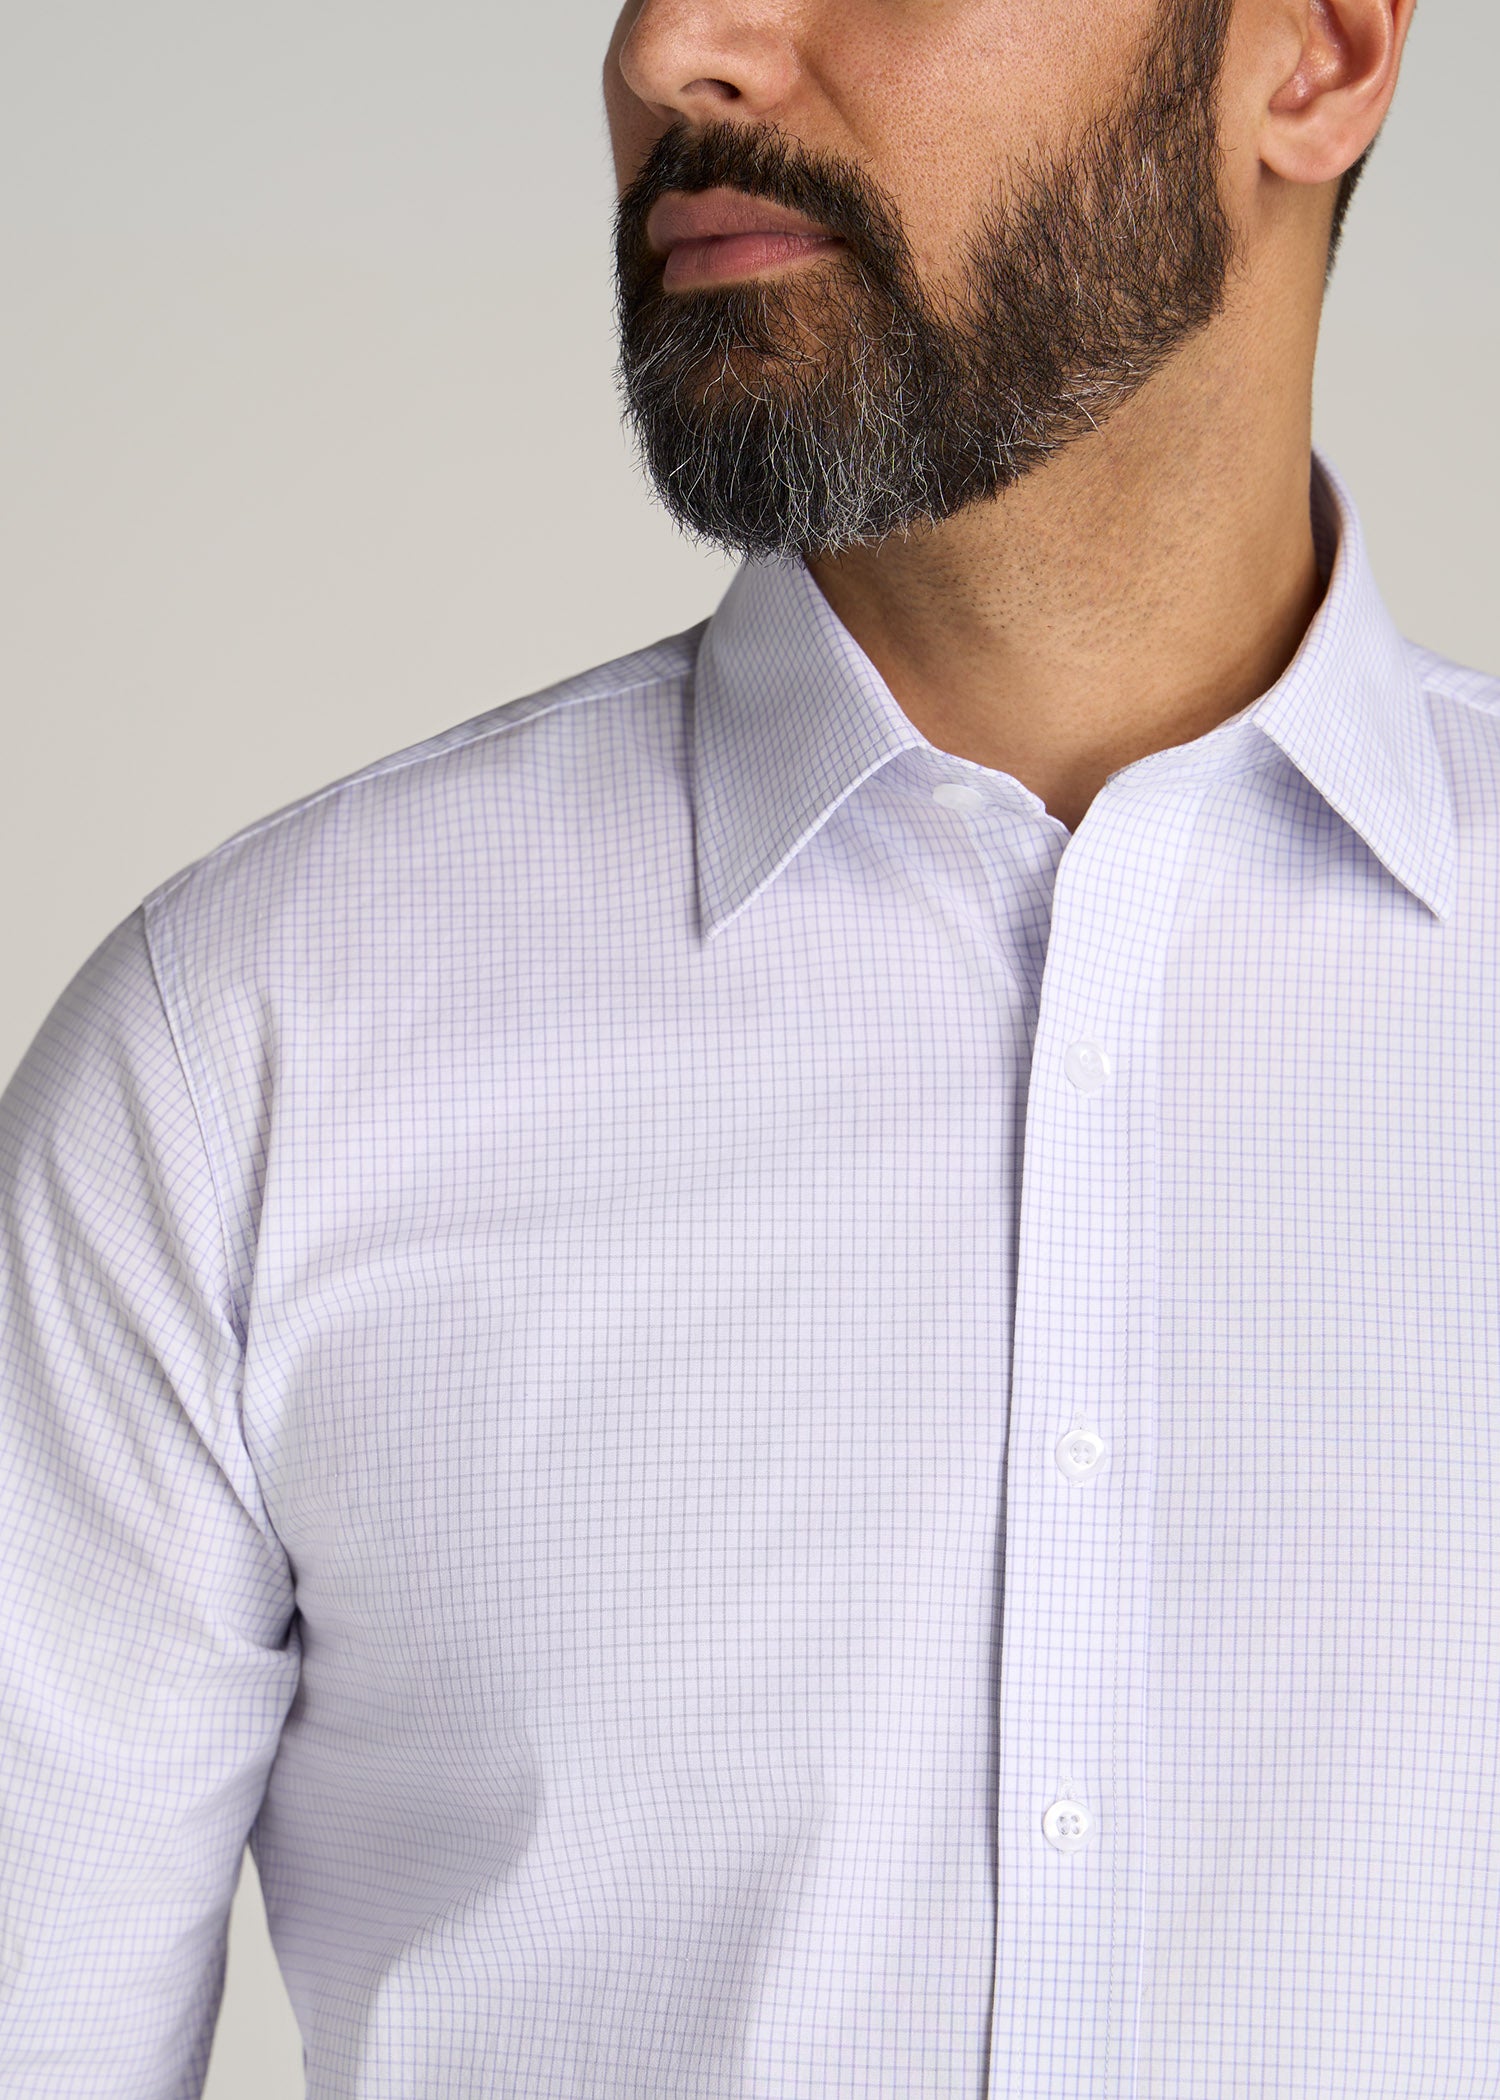 Oskar Button-Up Dress Shirt for Tall Men in Iris Mini Check